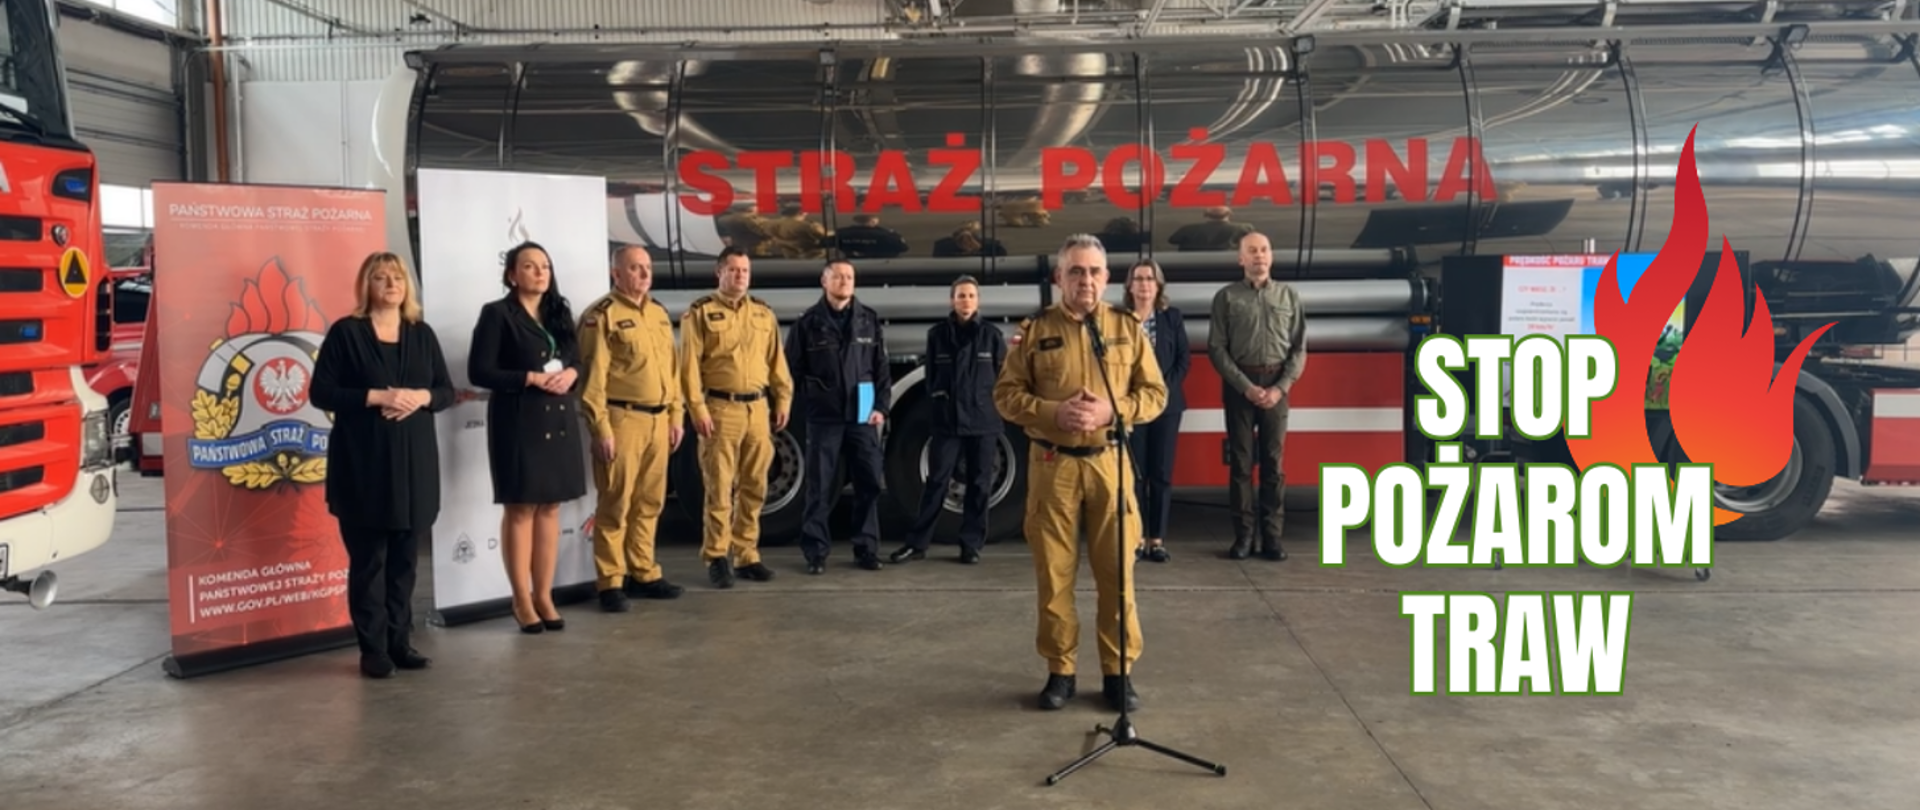 Zdjęcie przedstawia pracowników KG PSP przed cysterna pożarniczą. Zastępca Komendanta Głównego PSP nadbryg. Józef Galica inauguruje kampanię - STOP POŻAROM TRAW.